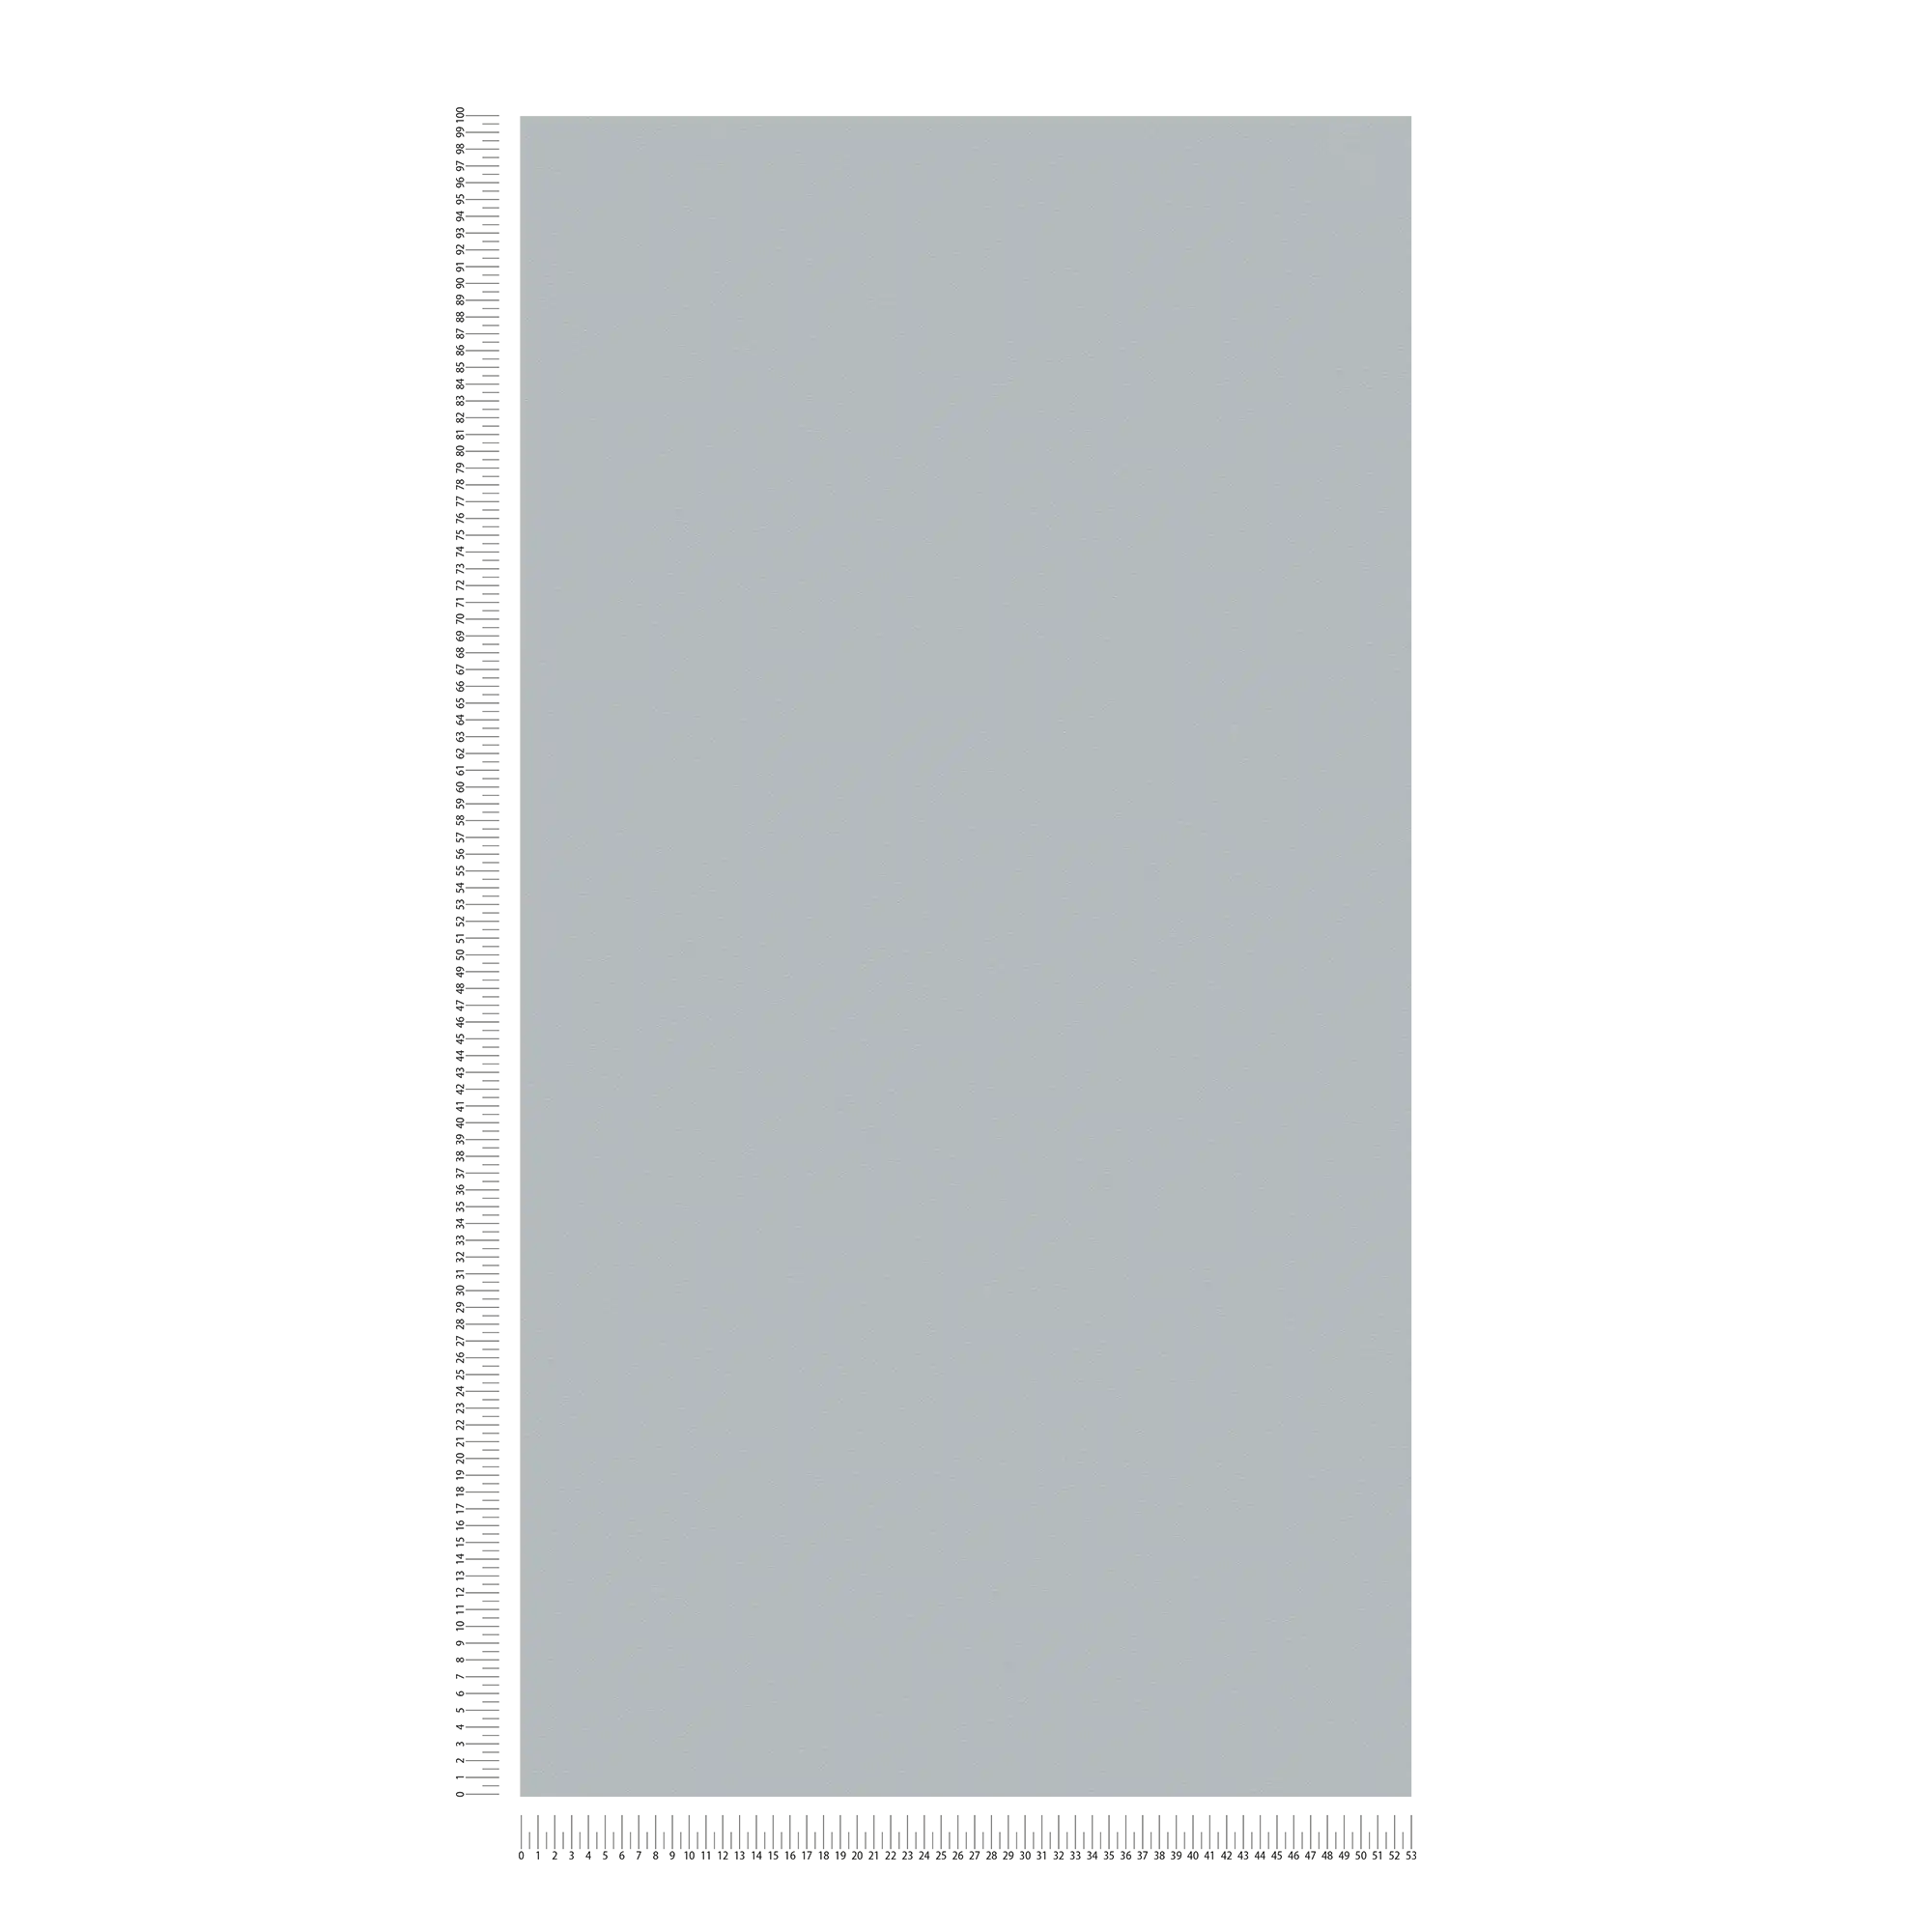             Papier peint intissé gris pierre uni, mat & avec structure mousse
        